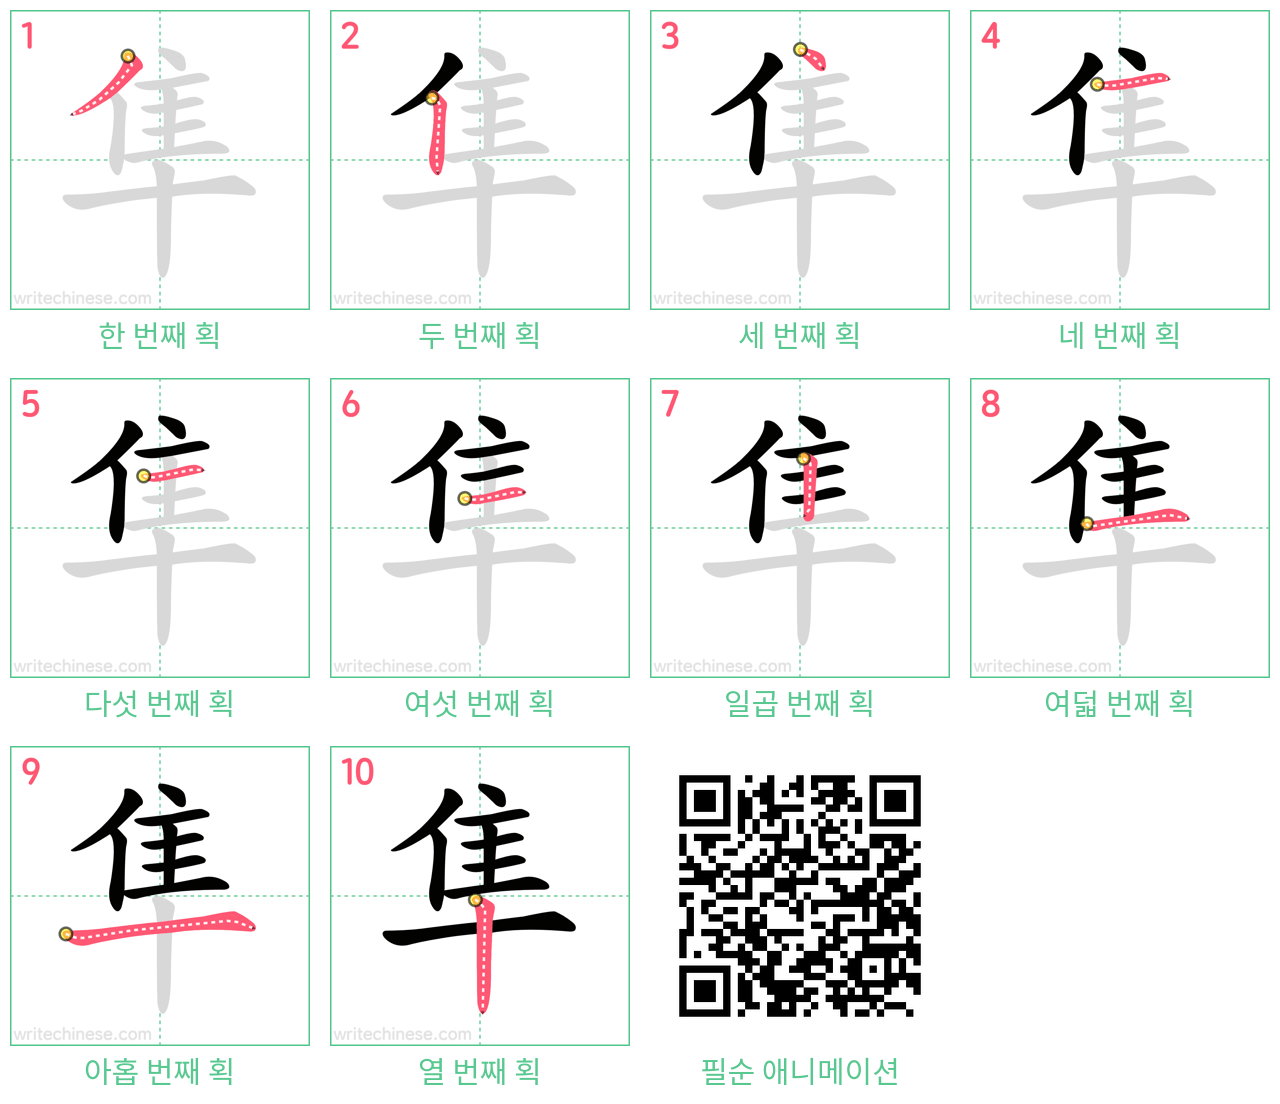 隼 step-by-step stroke order diagrams